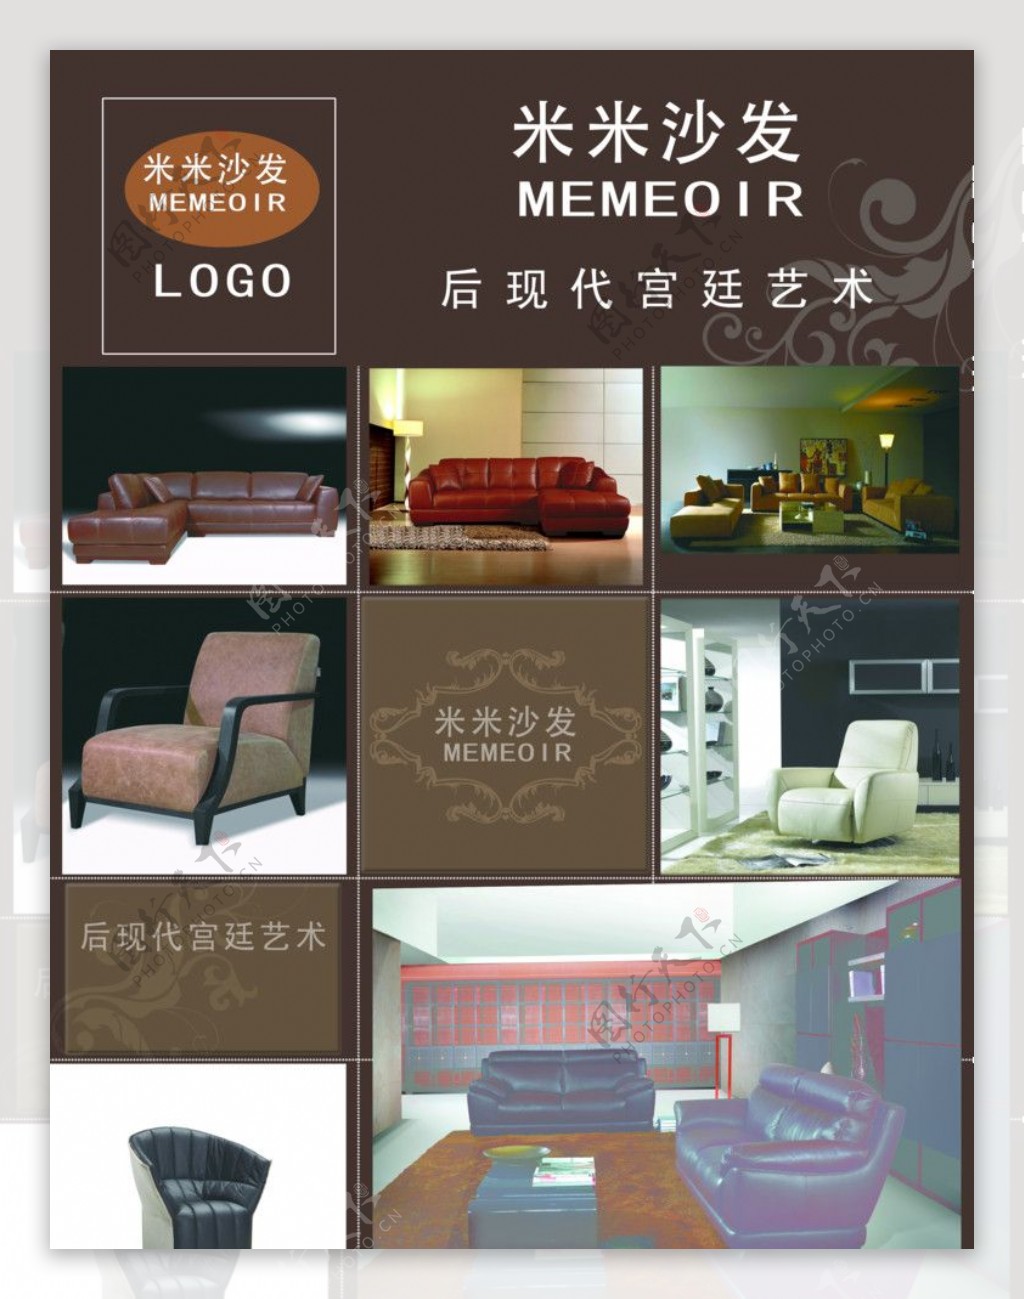 家具公司dm宣传单psd设计模板图片